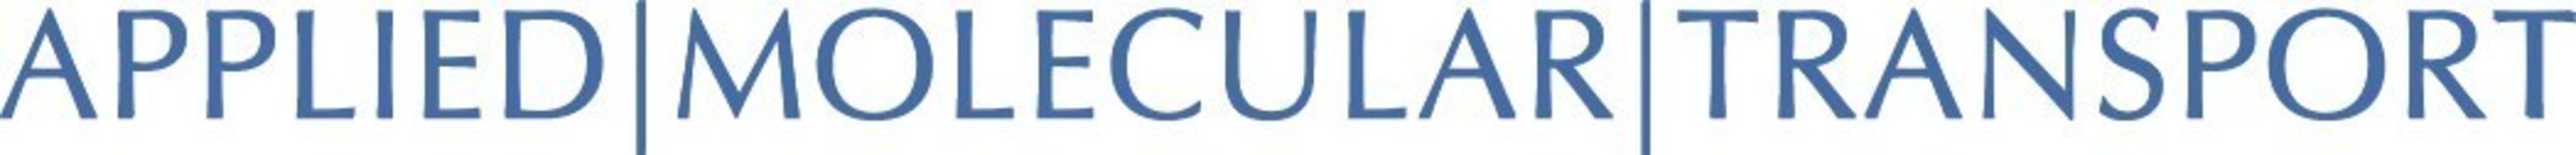 Applied Molecular Transport, LLC logo